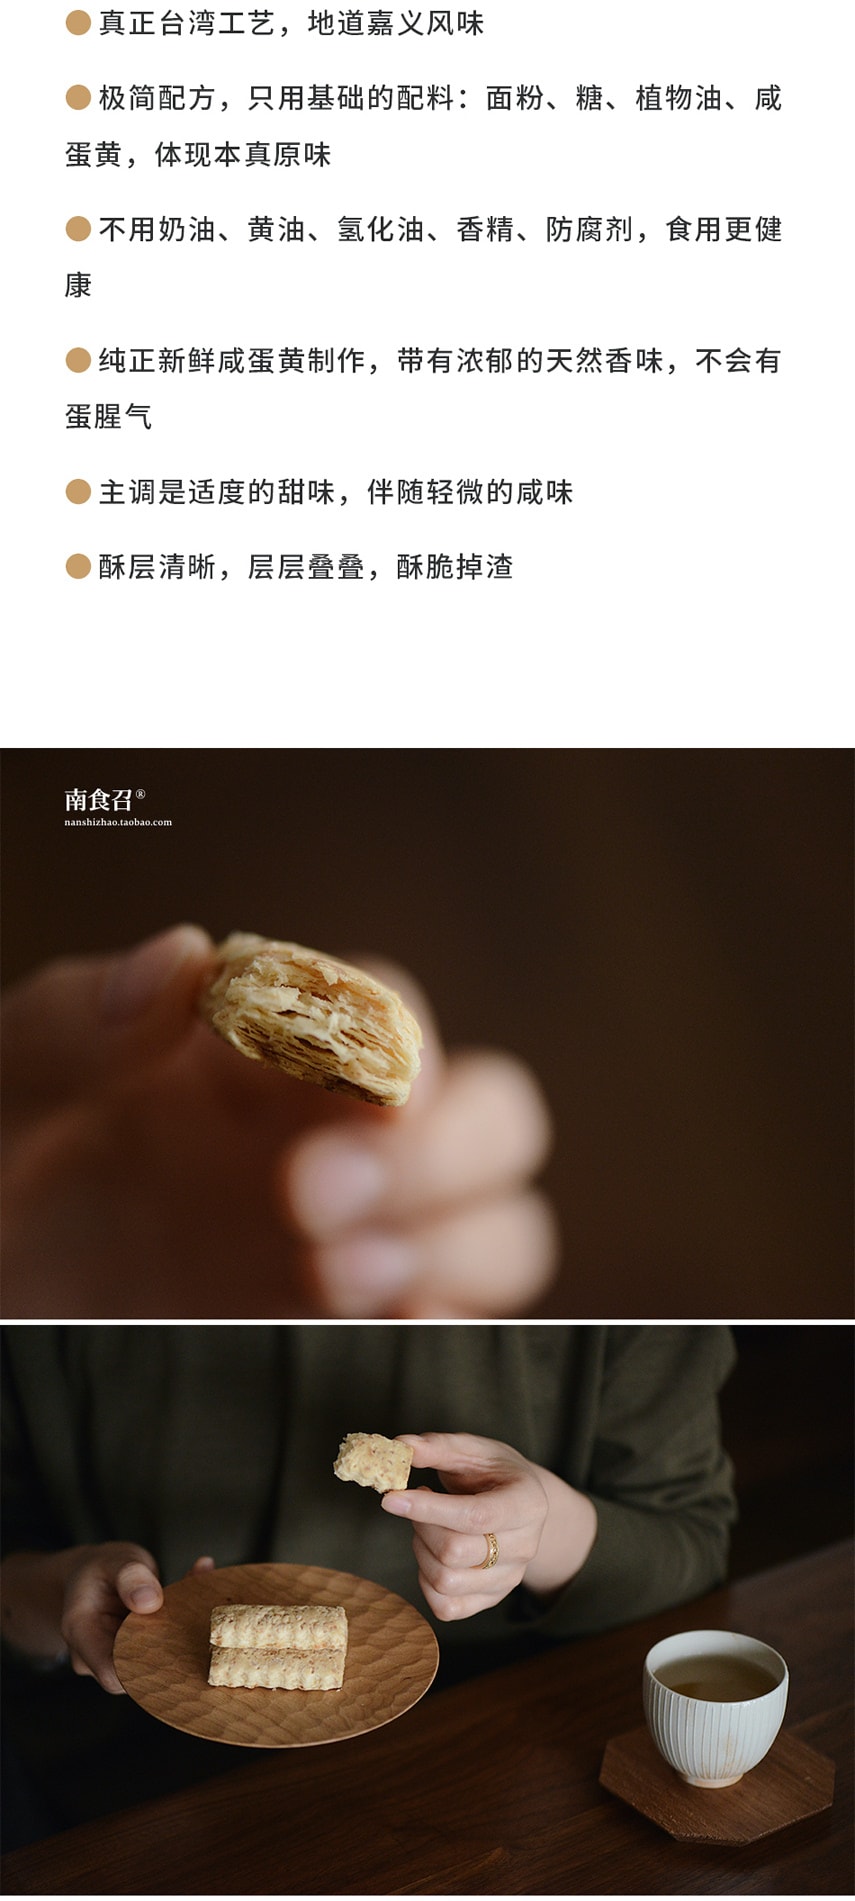 【網紅零食】鹹蛋黃餅乾 100克 本真原味 恩典酥 道地台灣工藝 南食召品牌